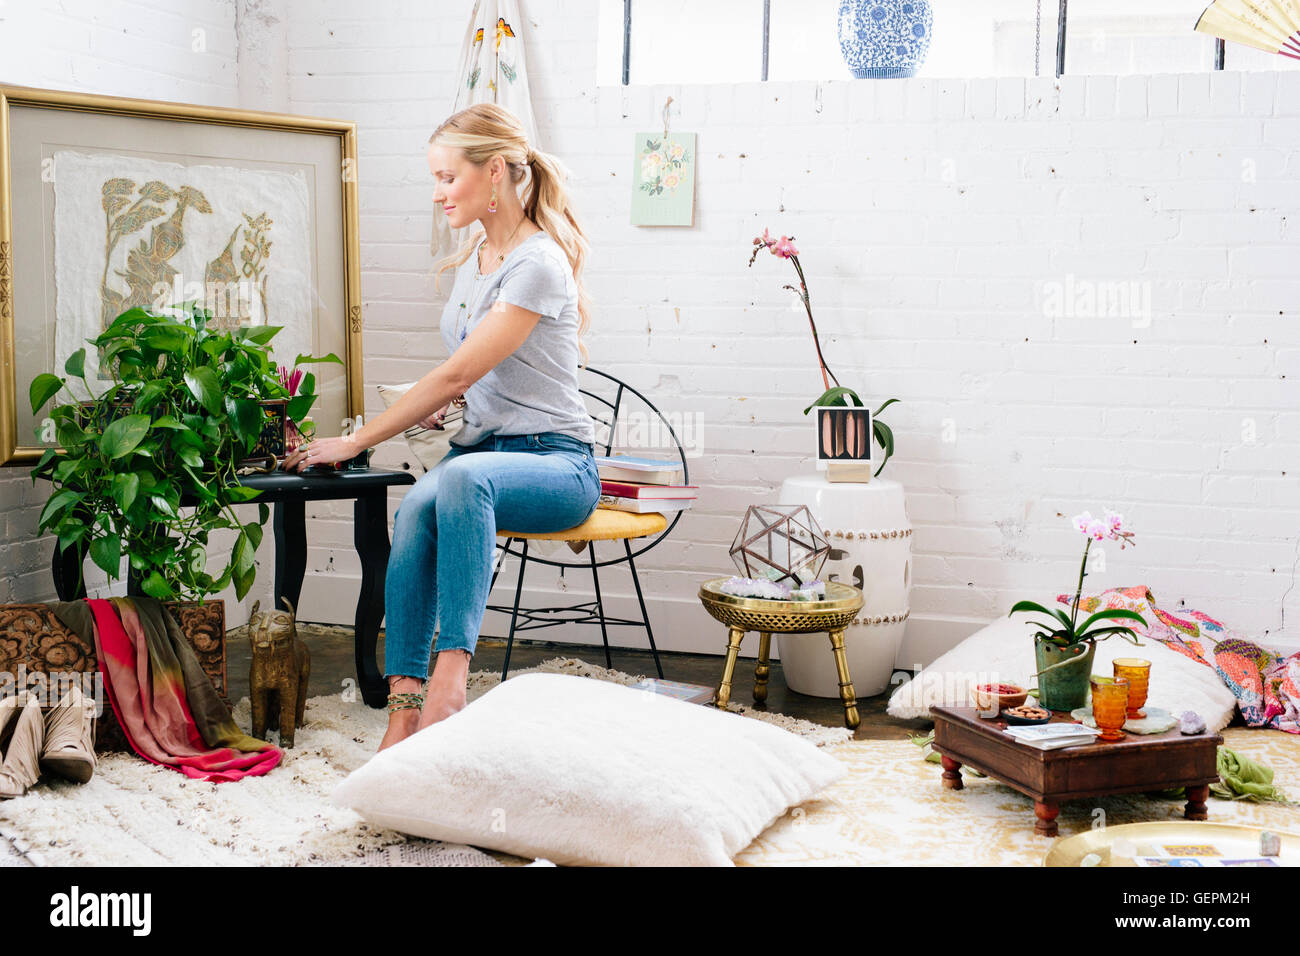 Une jeune femme assise sur une chaise dans un appartement décoré avec des photos et des plantes. Banque D'Images